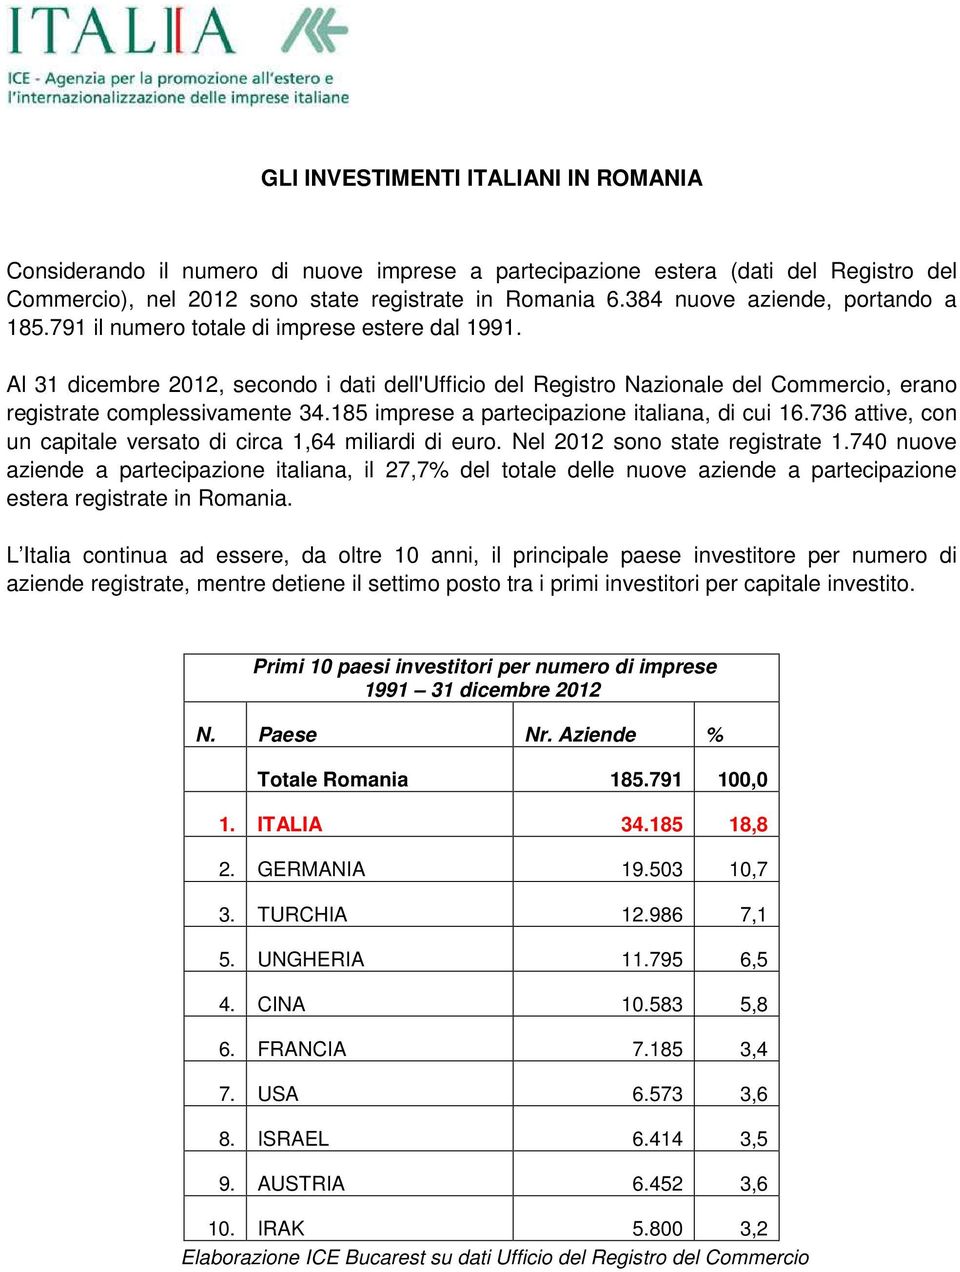 Al 31 dicembre 2012, secondo i dati dell'ufficio del Registro Nazionale del Commercio, erano registrate complessivamente 34.185 imprese a partecipazione italiana, di cui 16.